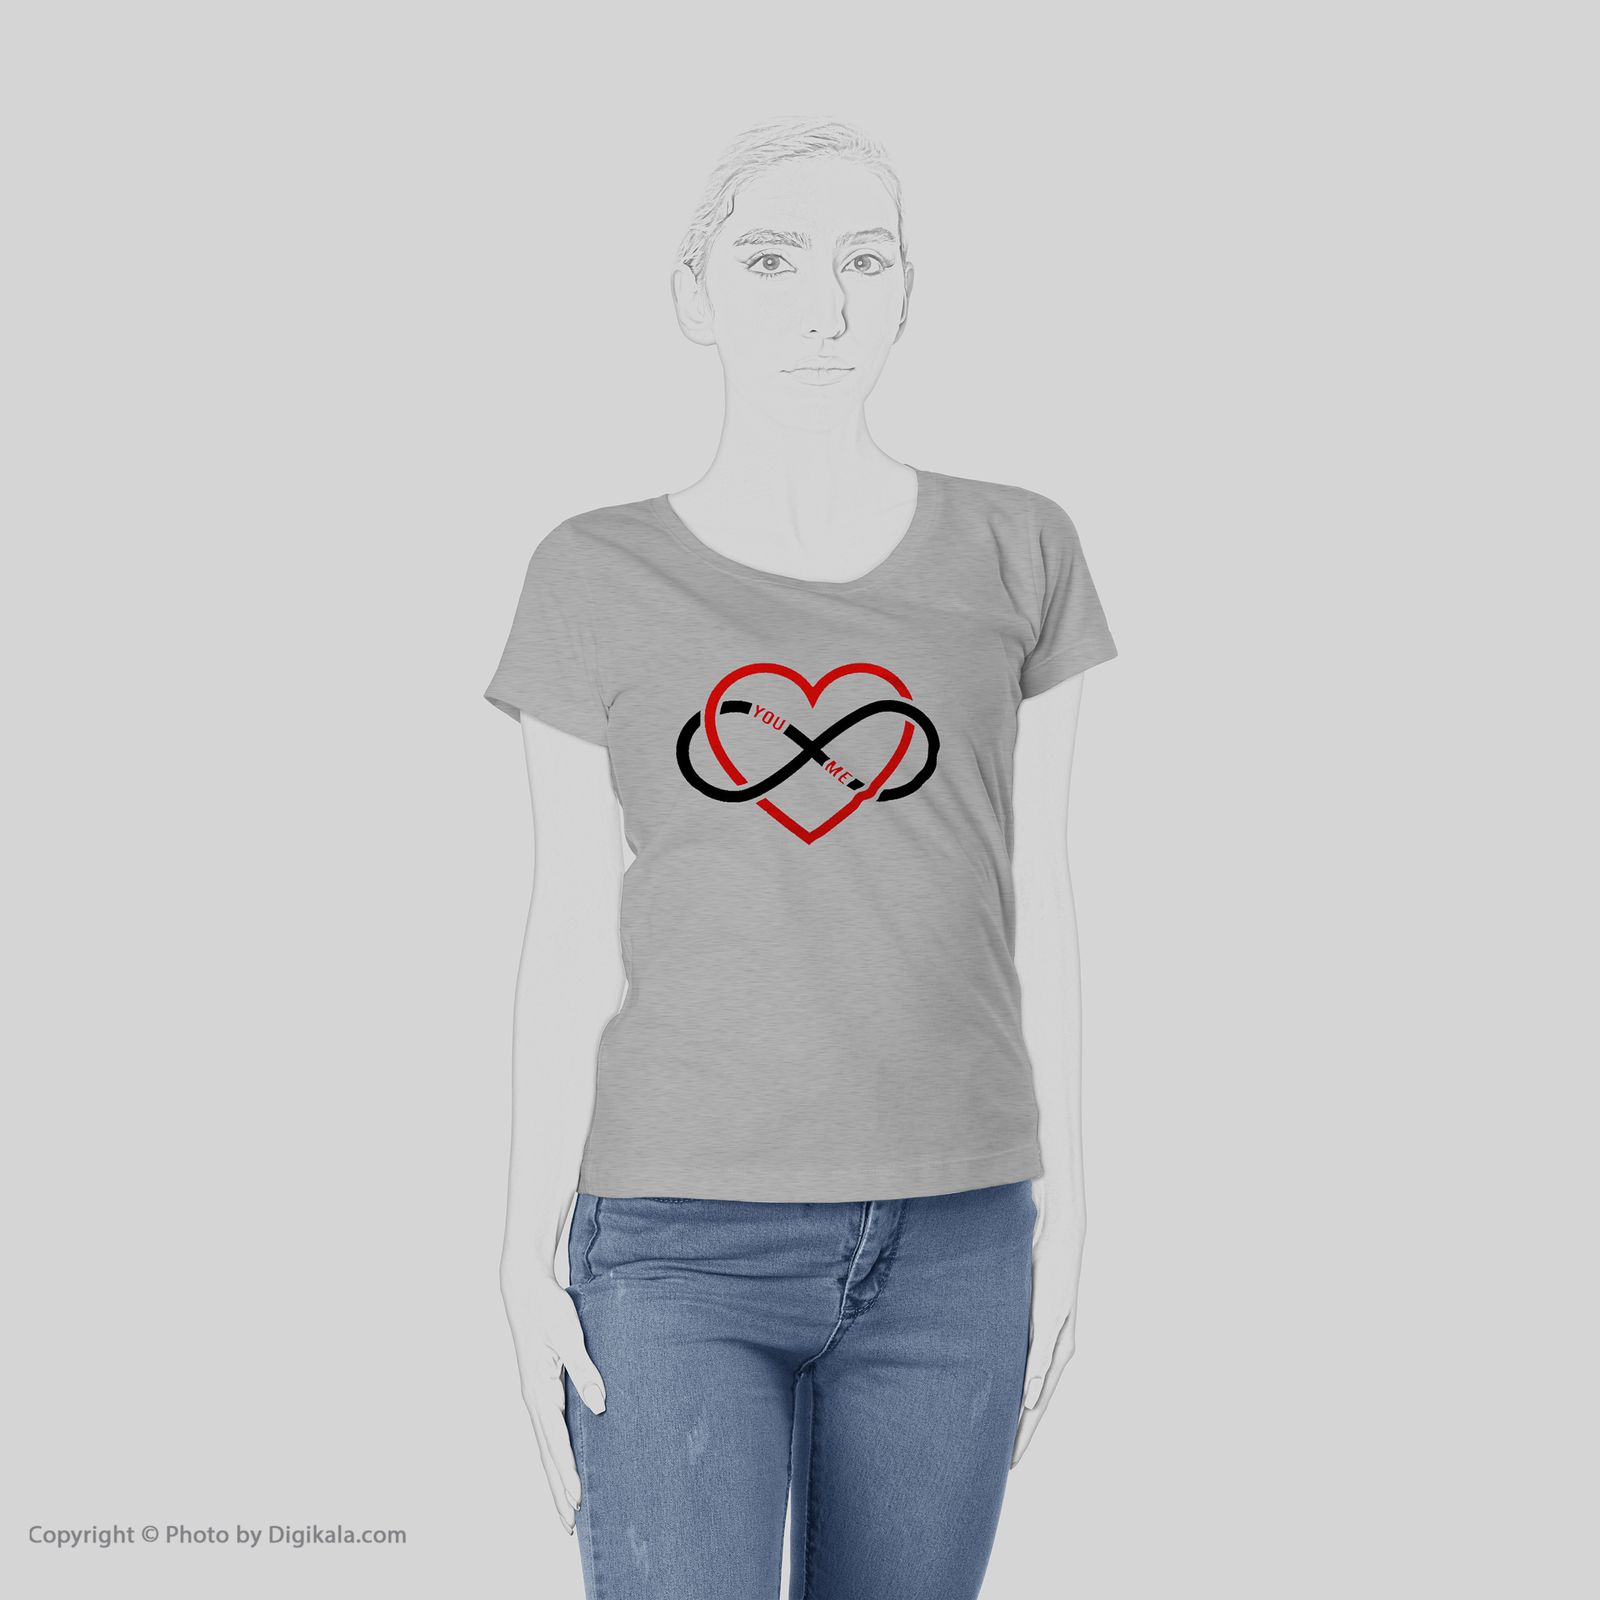 تی شرت زنانه به رسم طرح قلب بی نهایت کد 476 -  - 6